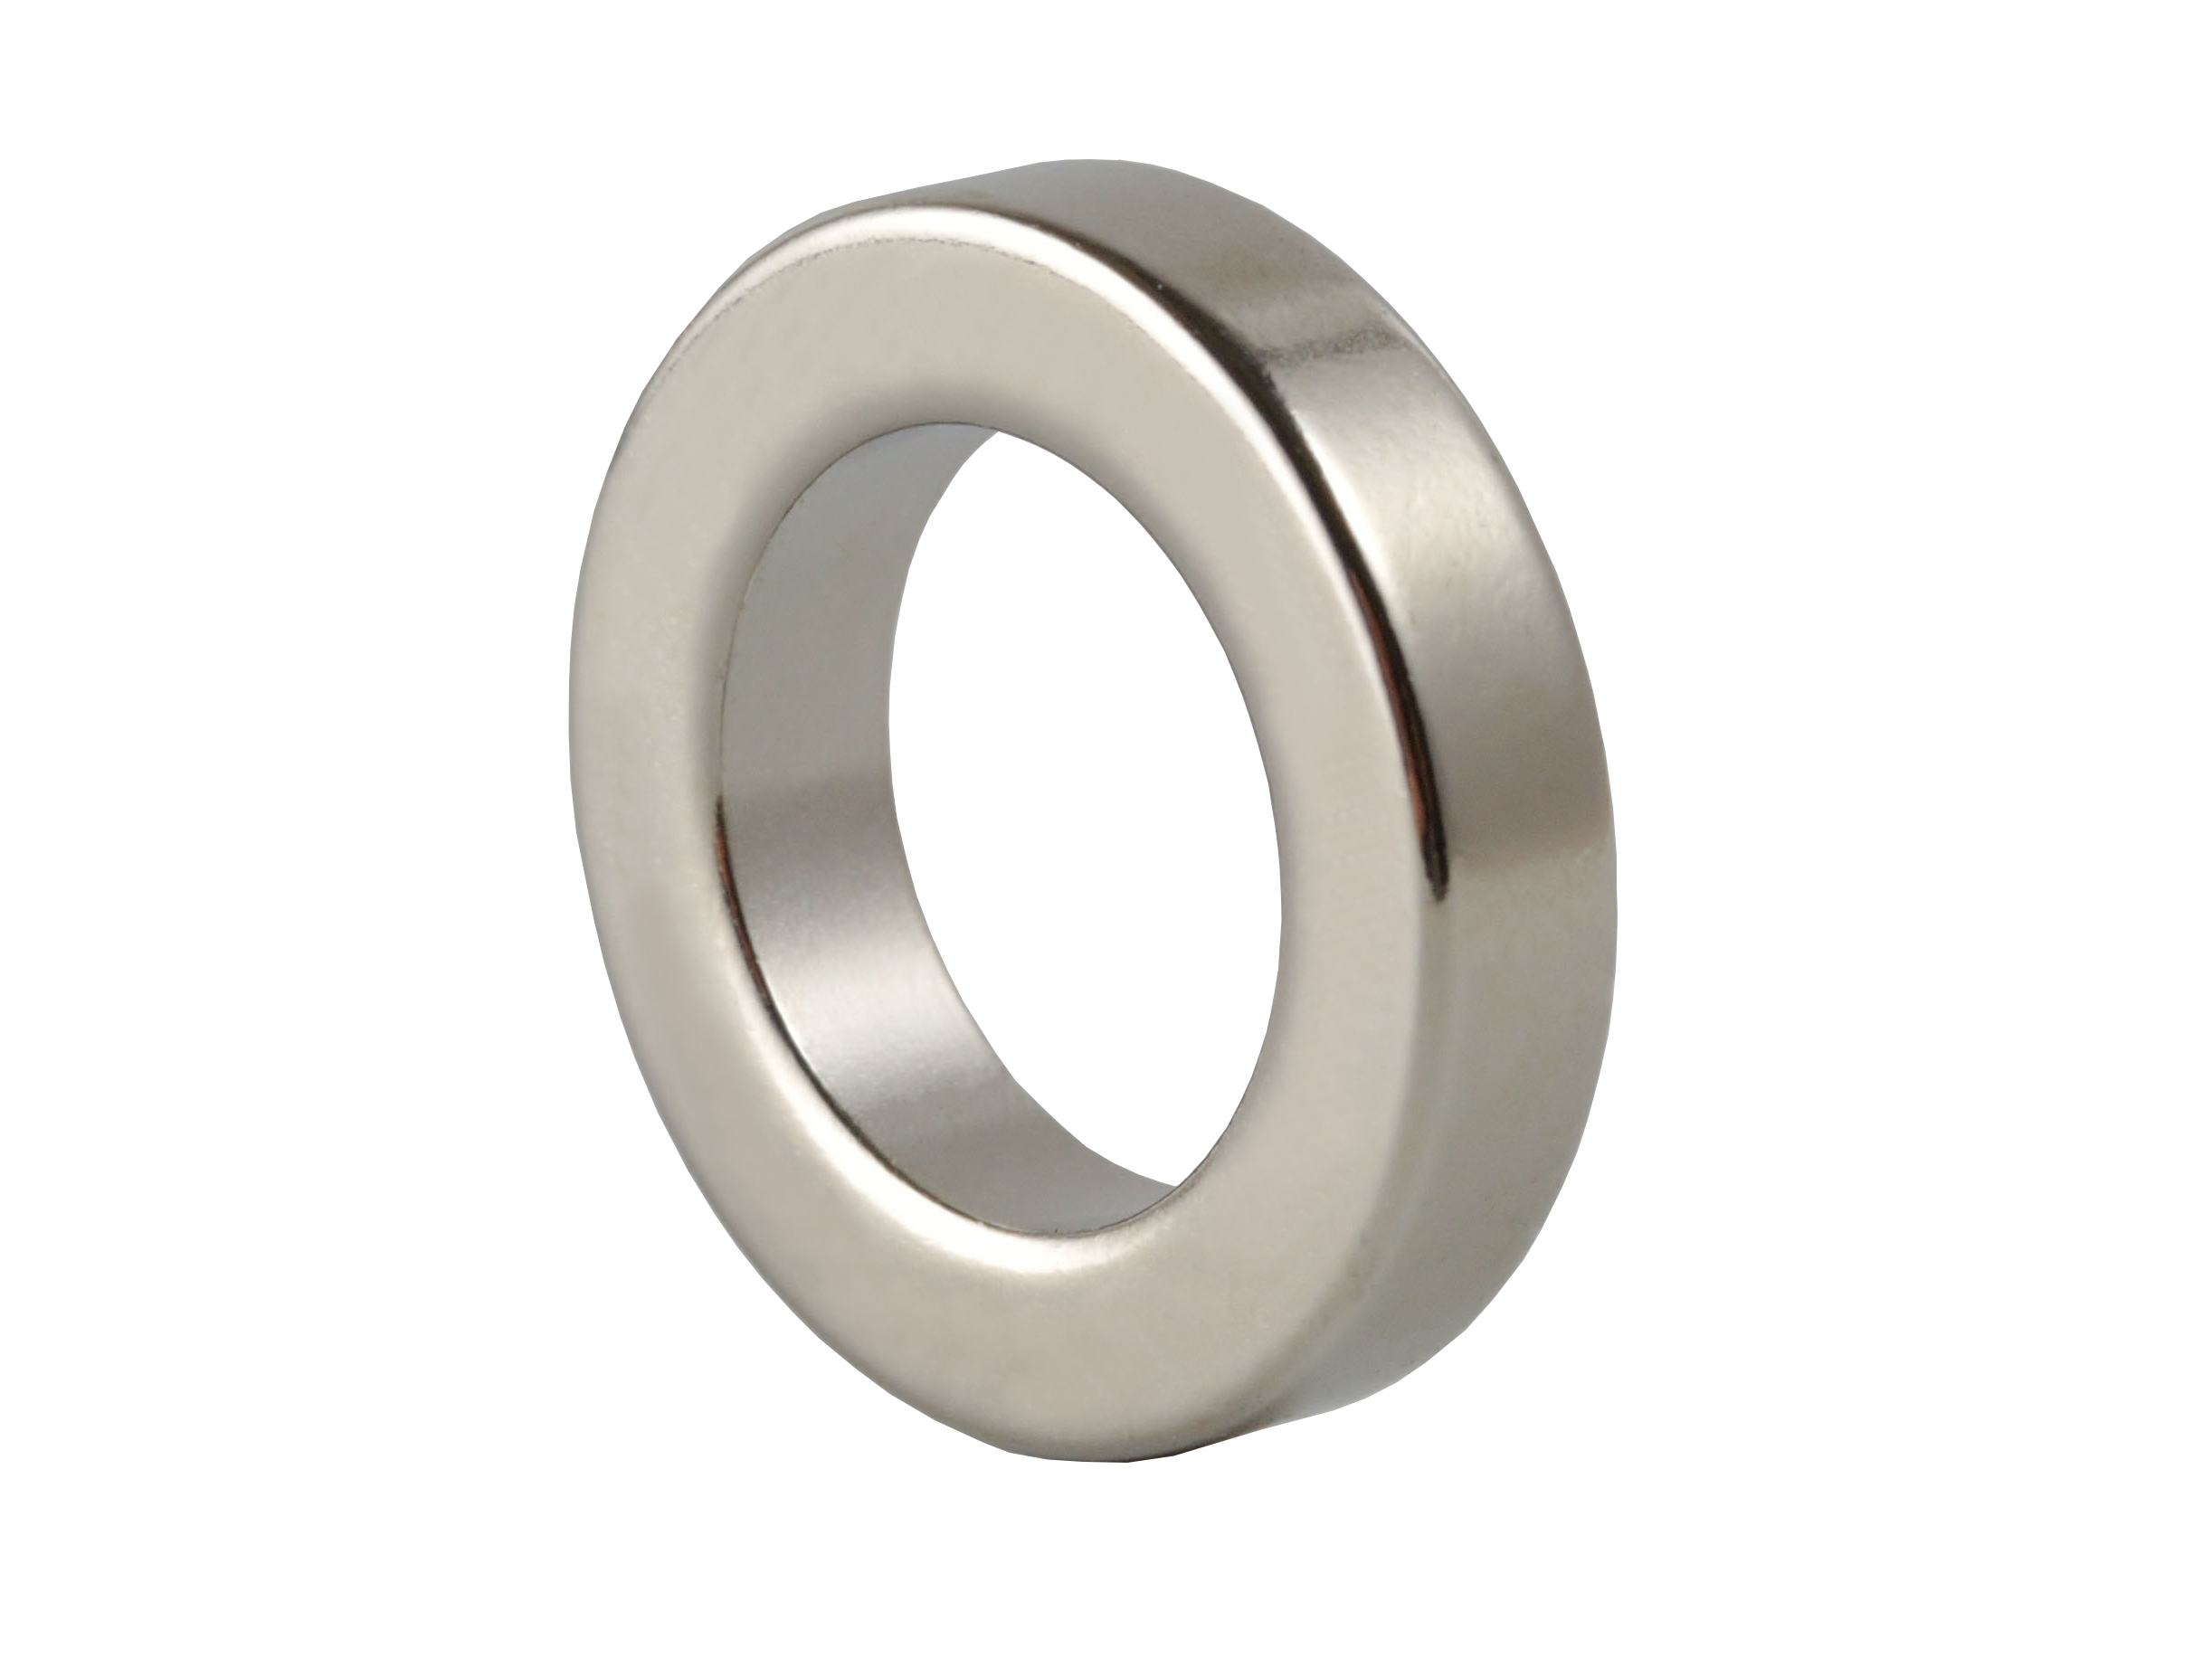 Ring‑Shaped Neodymium Magnet NOR131